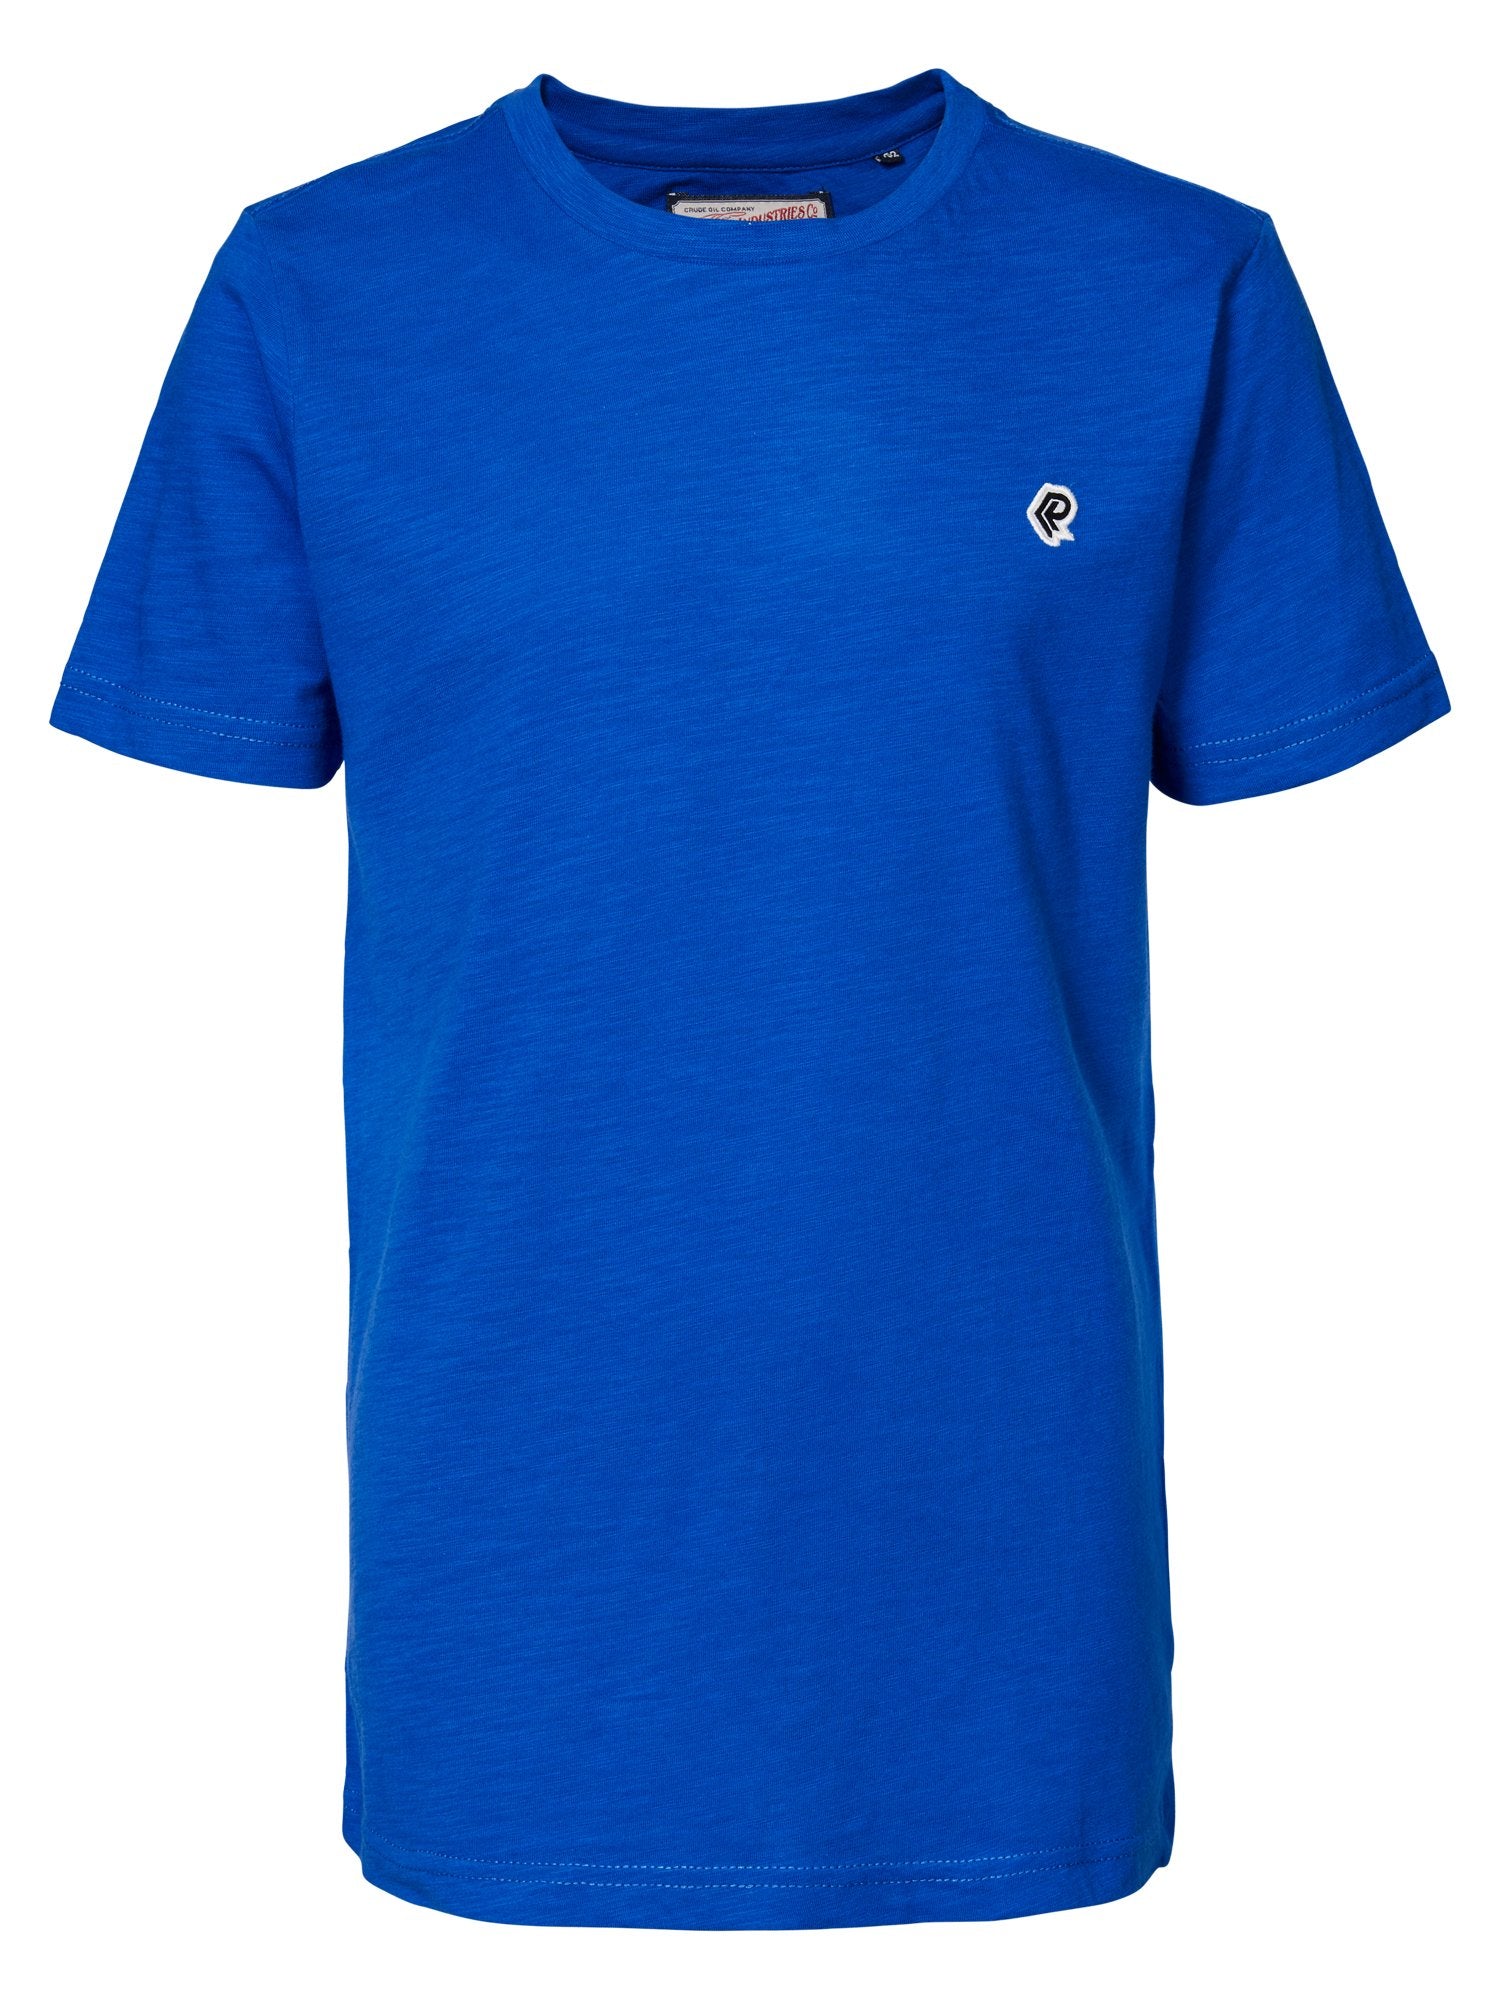 Jongens T-shirt SS R-neck van Petrol Industries in de kleur Light Capri in maat 176.